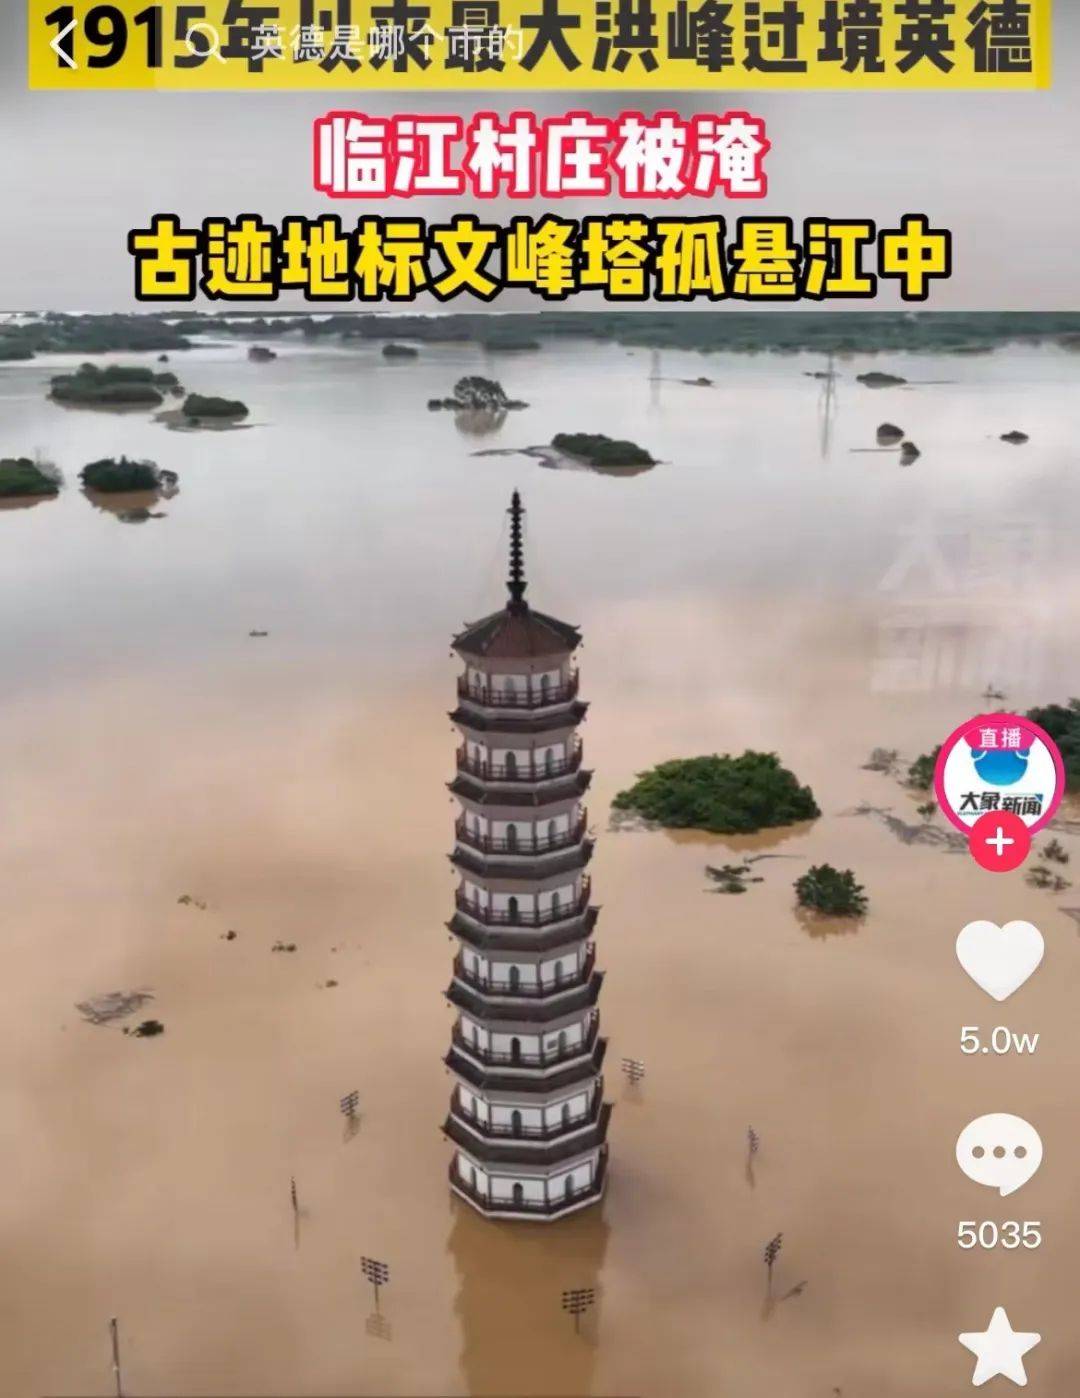 广东河源龙川遭遇50年一遇特大暴雨 大水围城_其它_长沙社区通